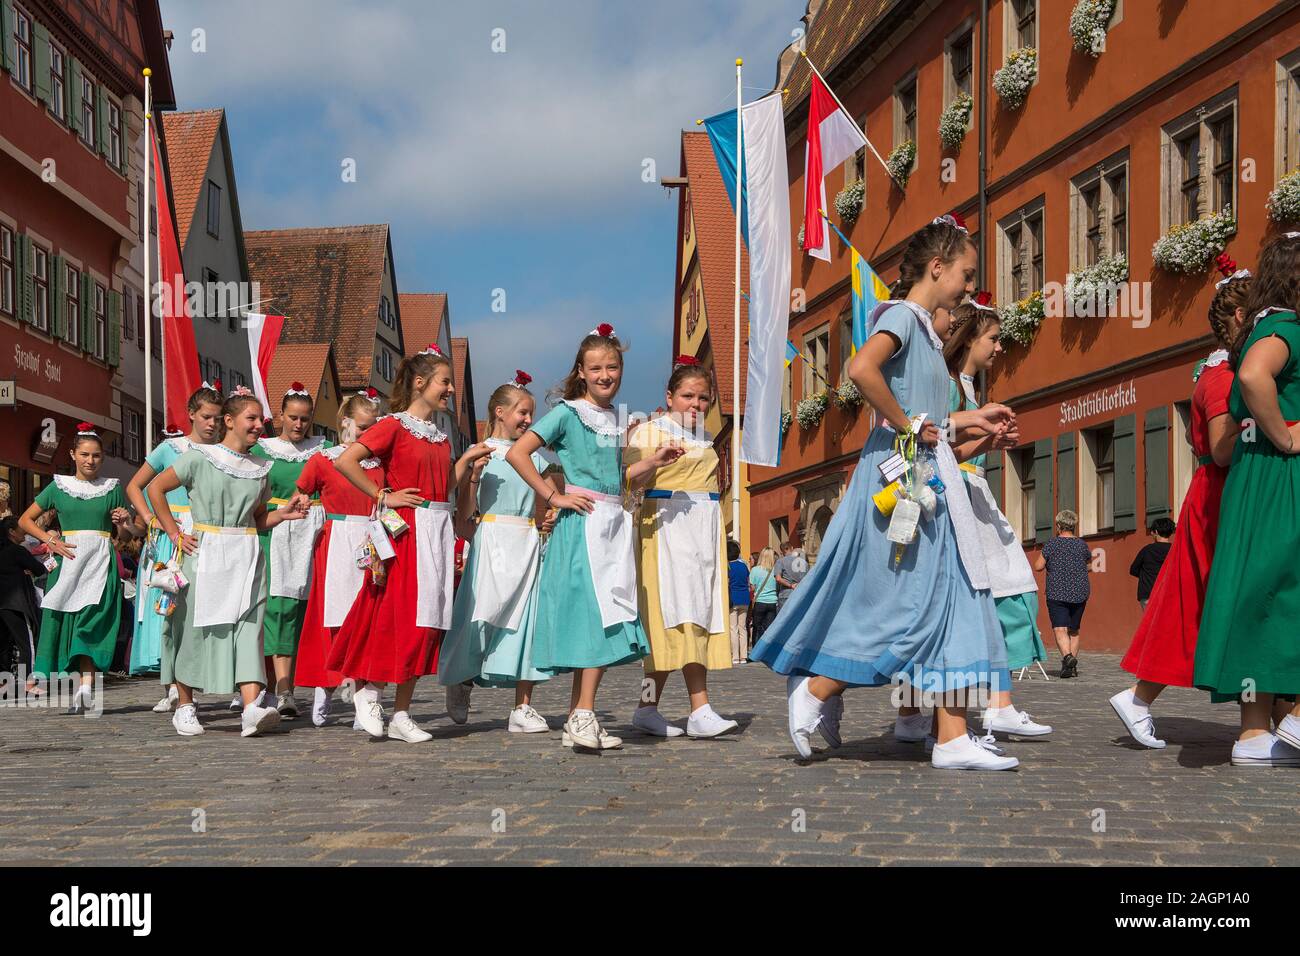 Dinkelsbühl, Deutschland - Juli 16, 2019; junge Erwachsene in bunten Kleidern im Zentrum von Dinkelsbühl während der Festlichkeiten des historischen Kinderzec Stockfoto